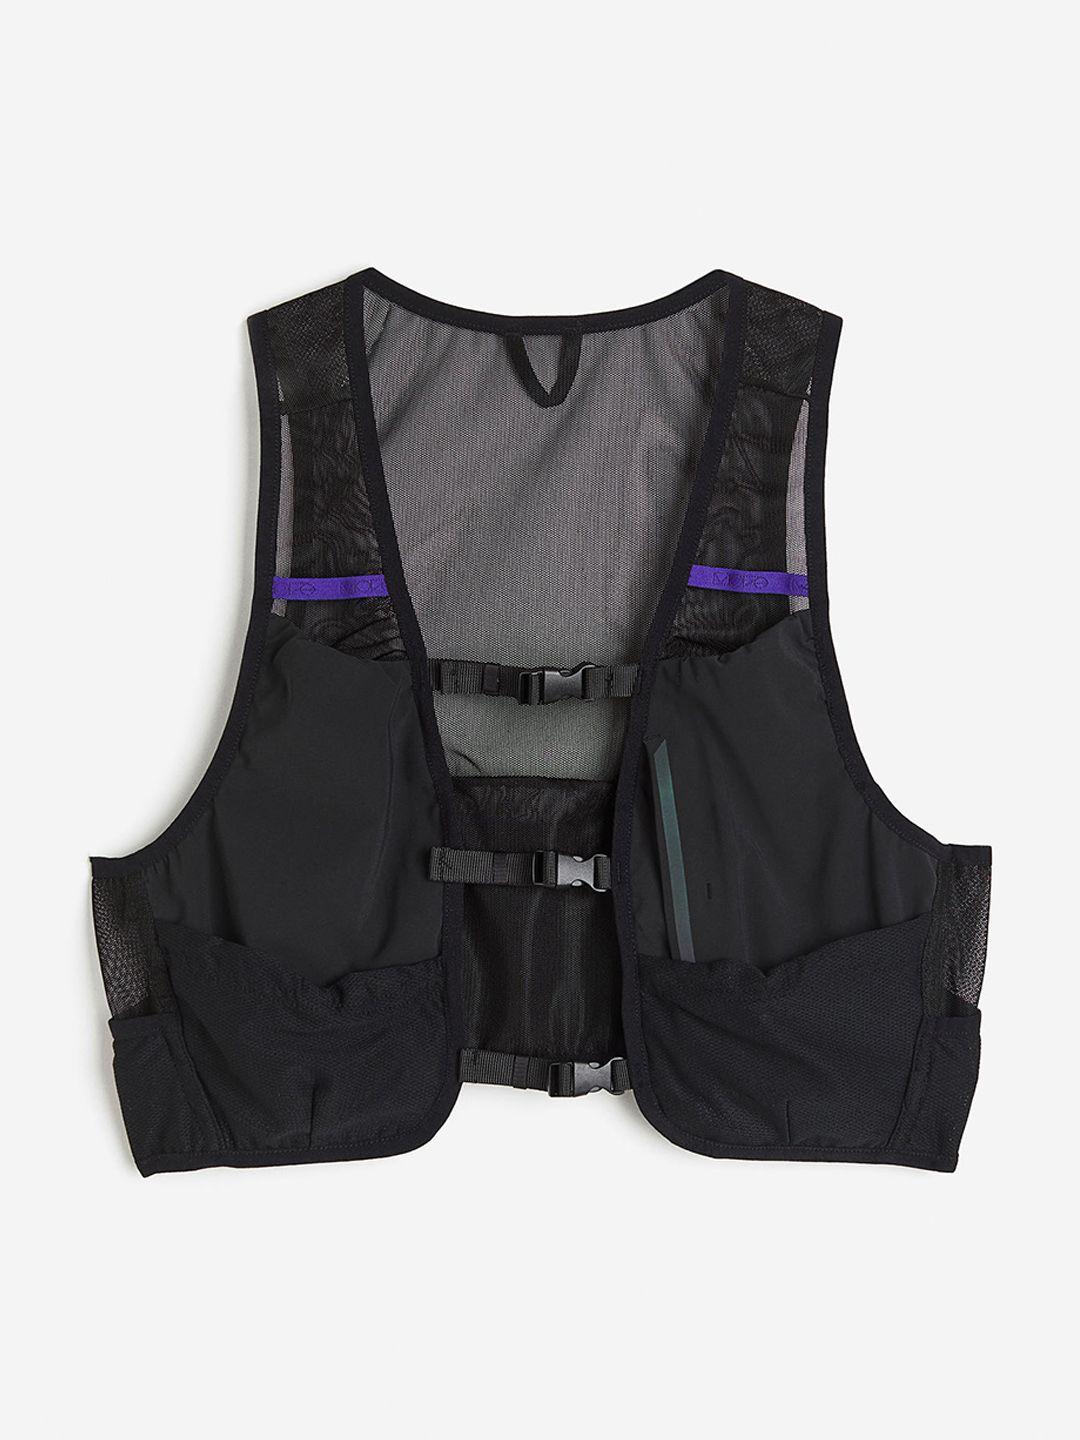 h&m mesh running vest